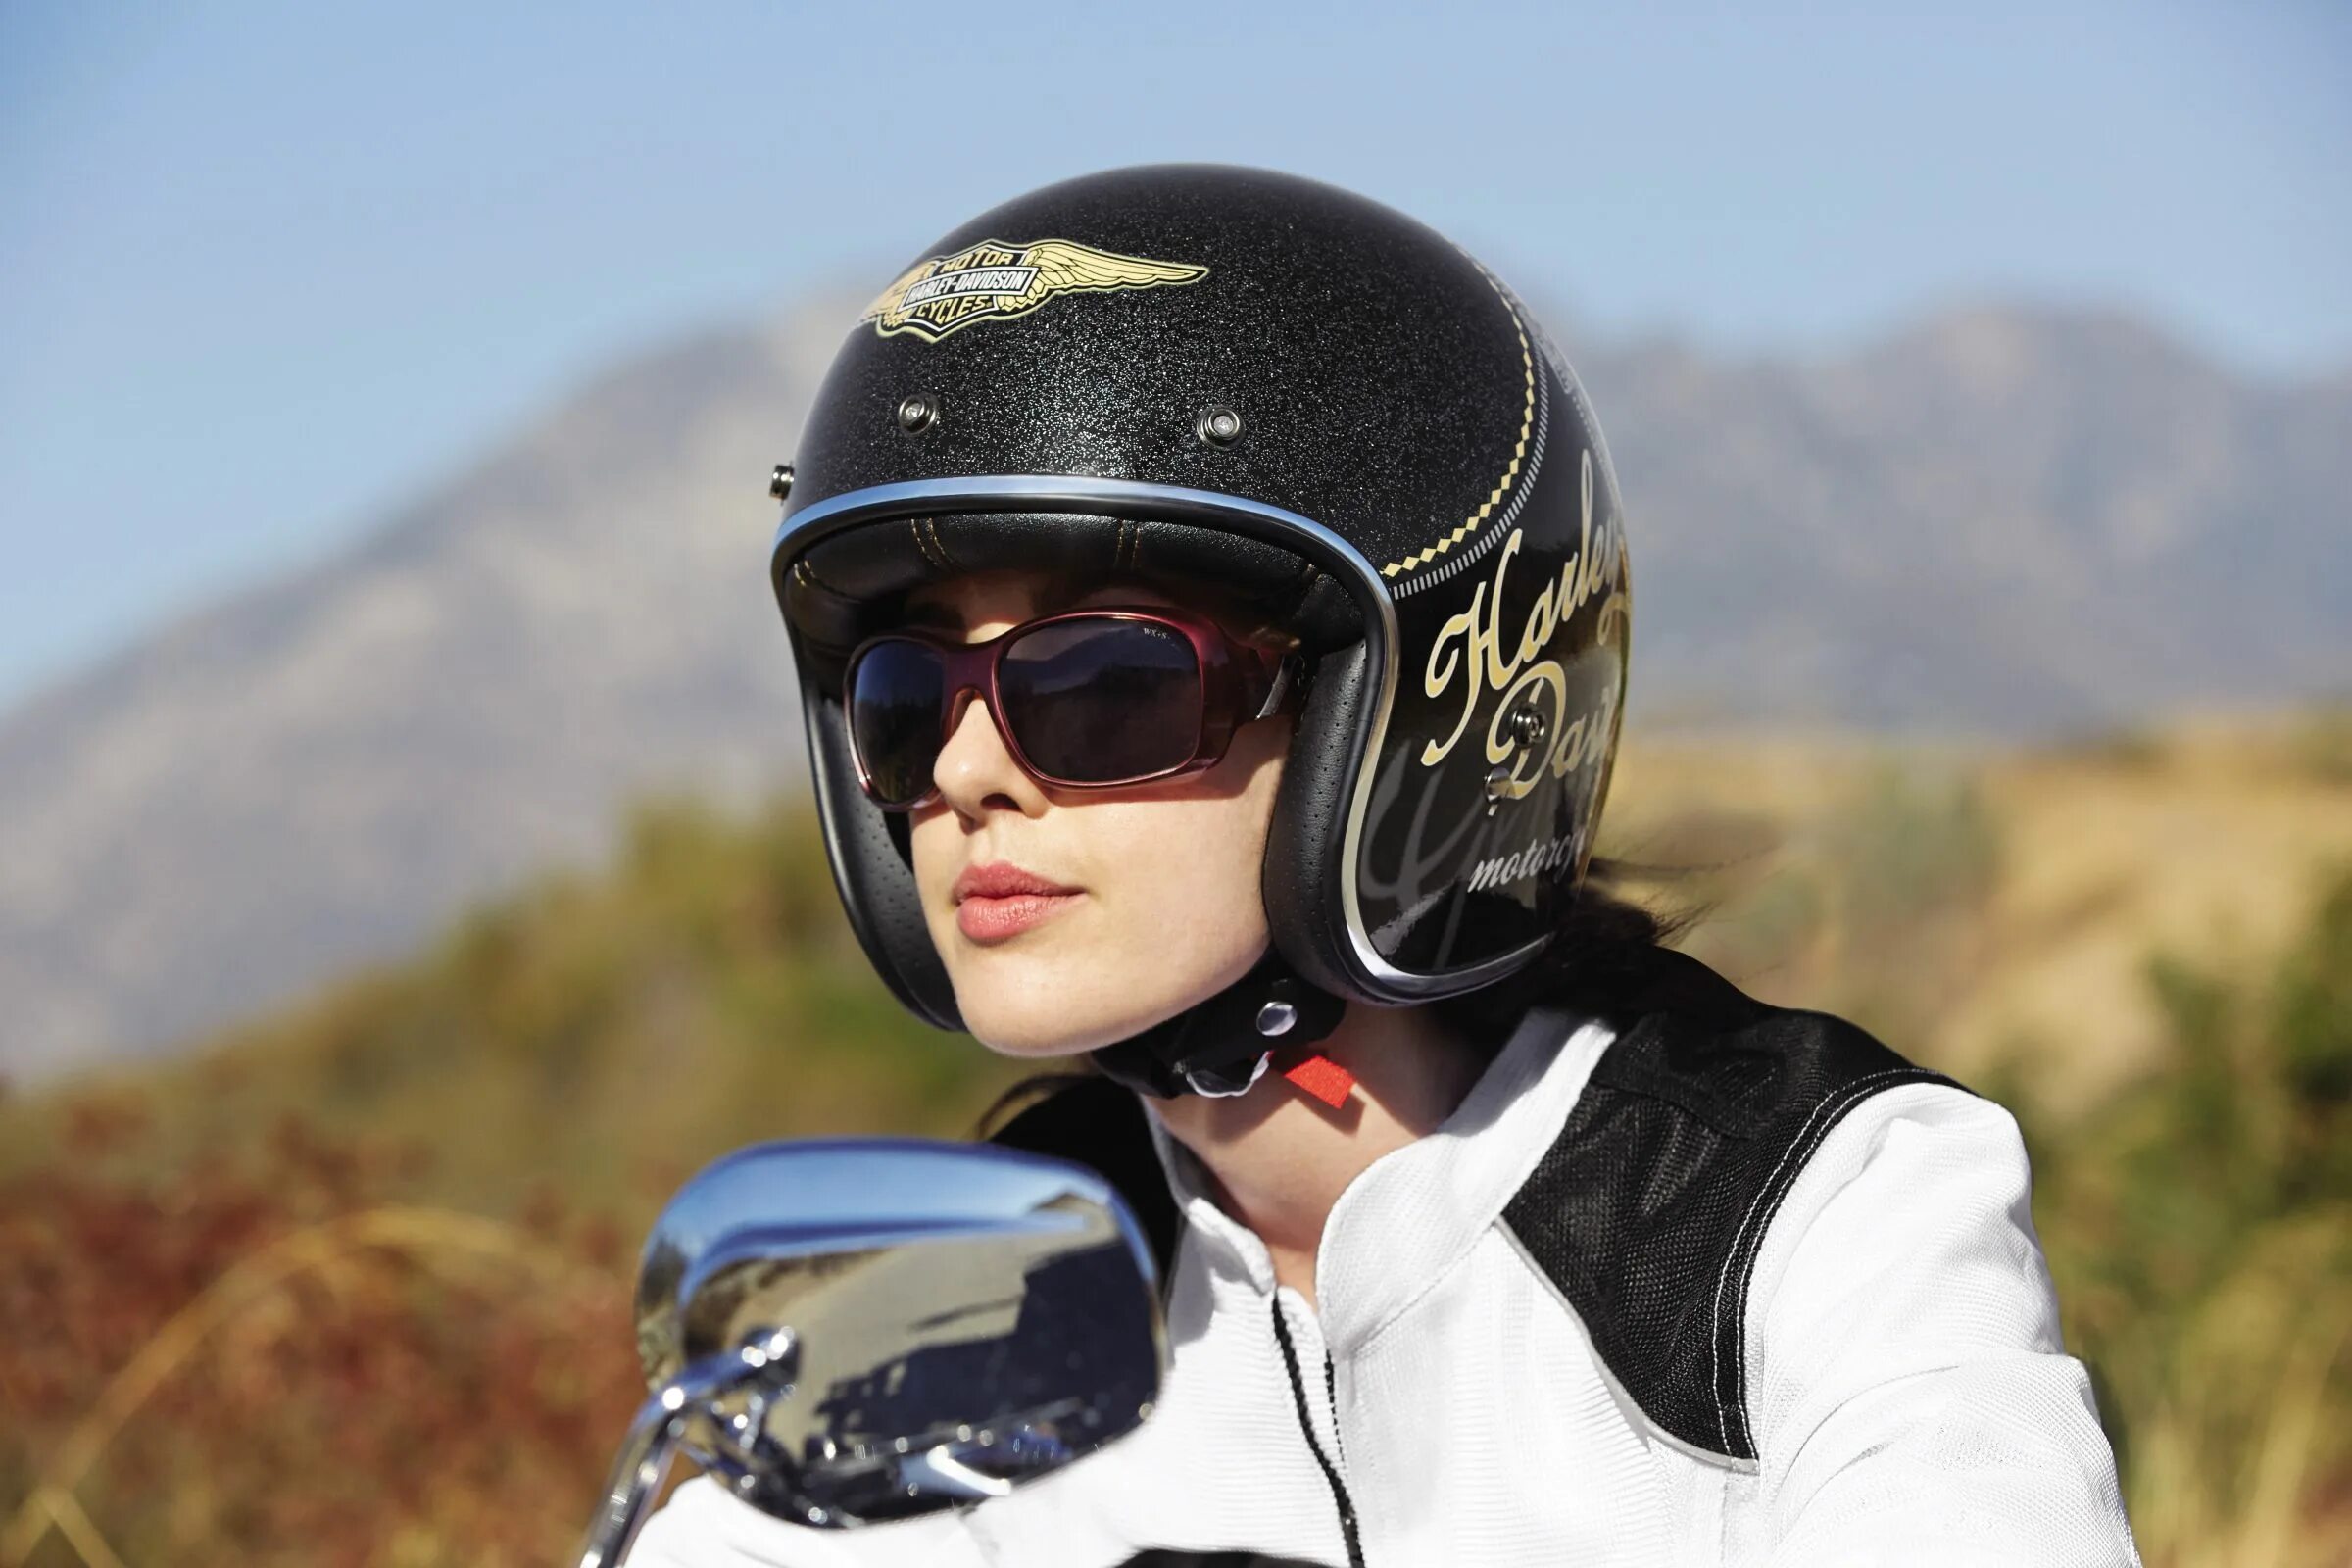 Пейдж Хэмилтон Helmet. Шлем Harley Davidson Pilot. Мотоциклетный шлем Casco Moto. Девушка в мотошлеме. Wear helmets